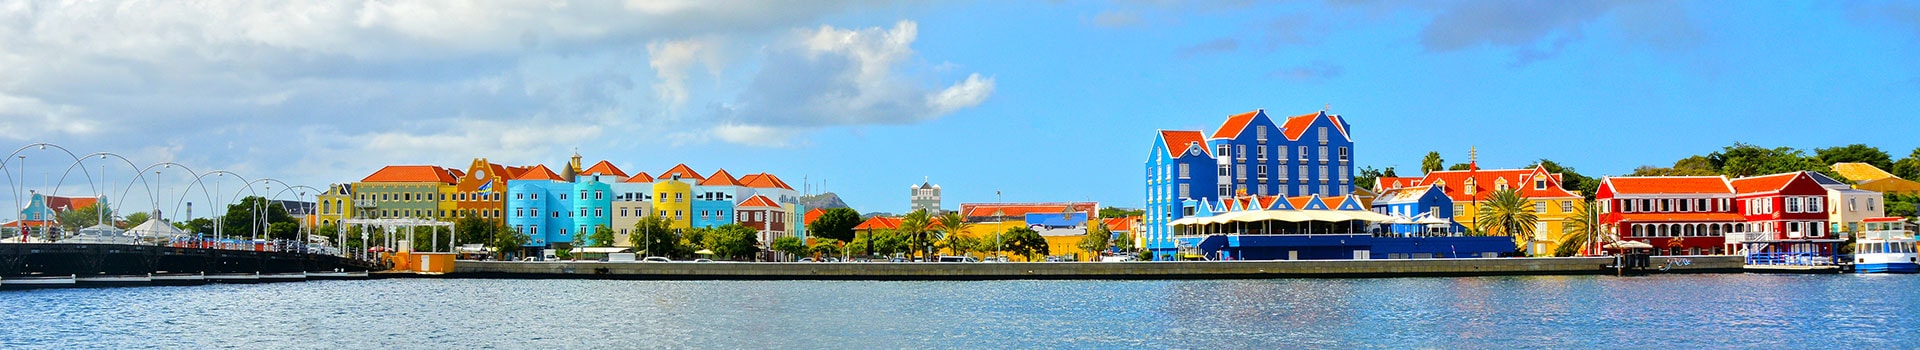 Saint marteen - Willemstad